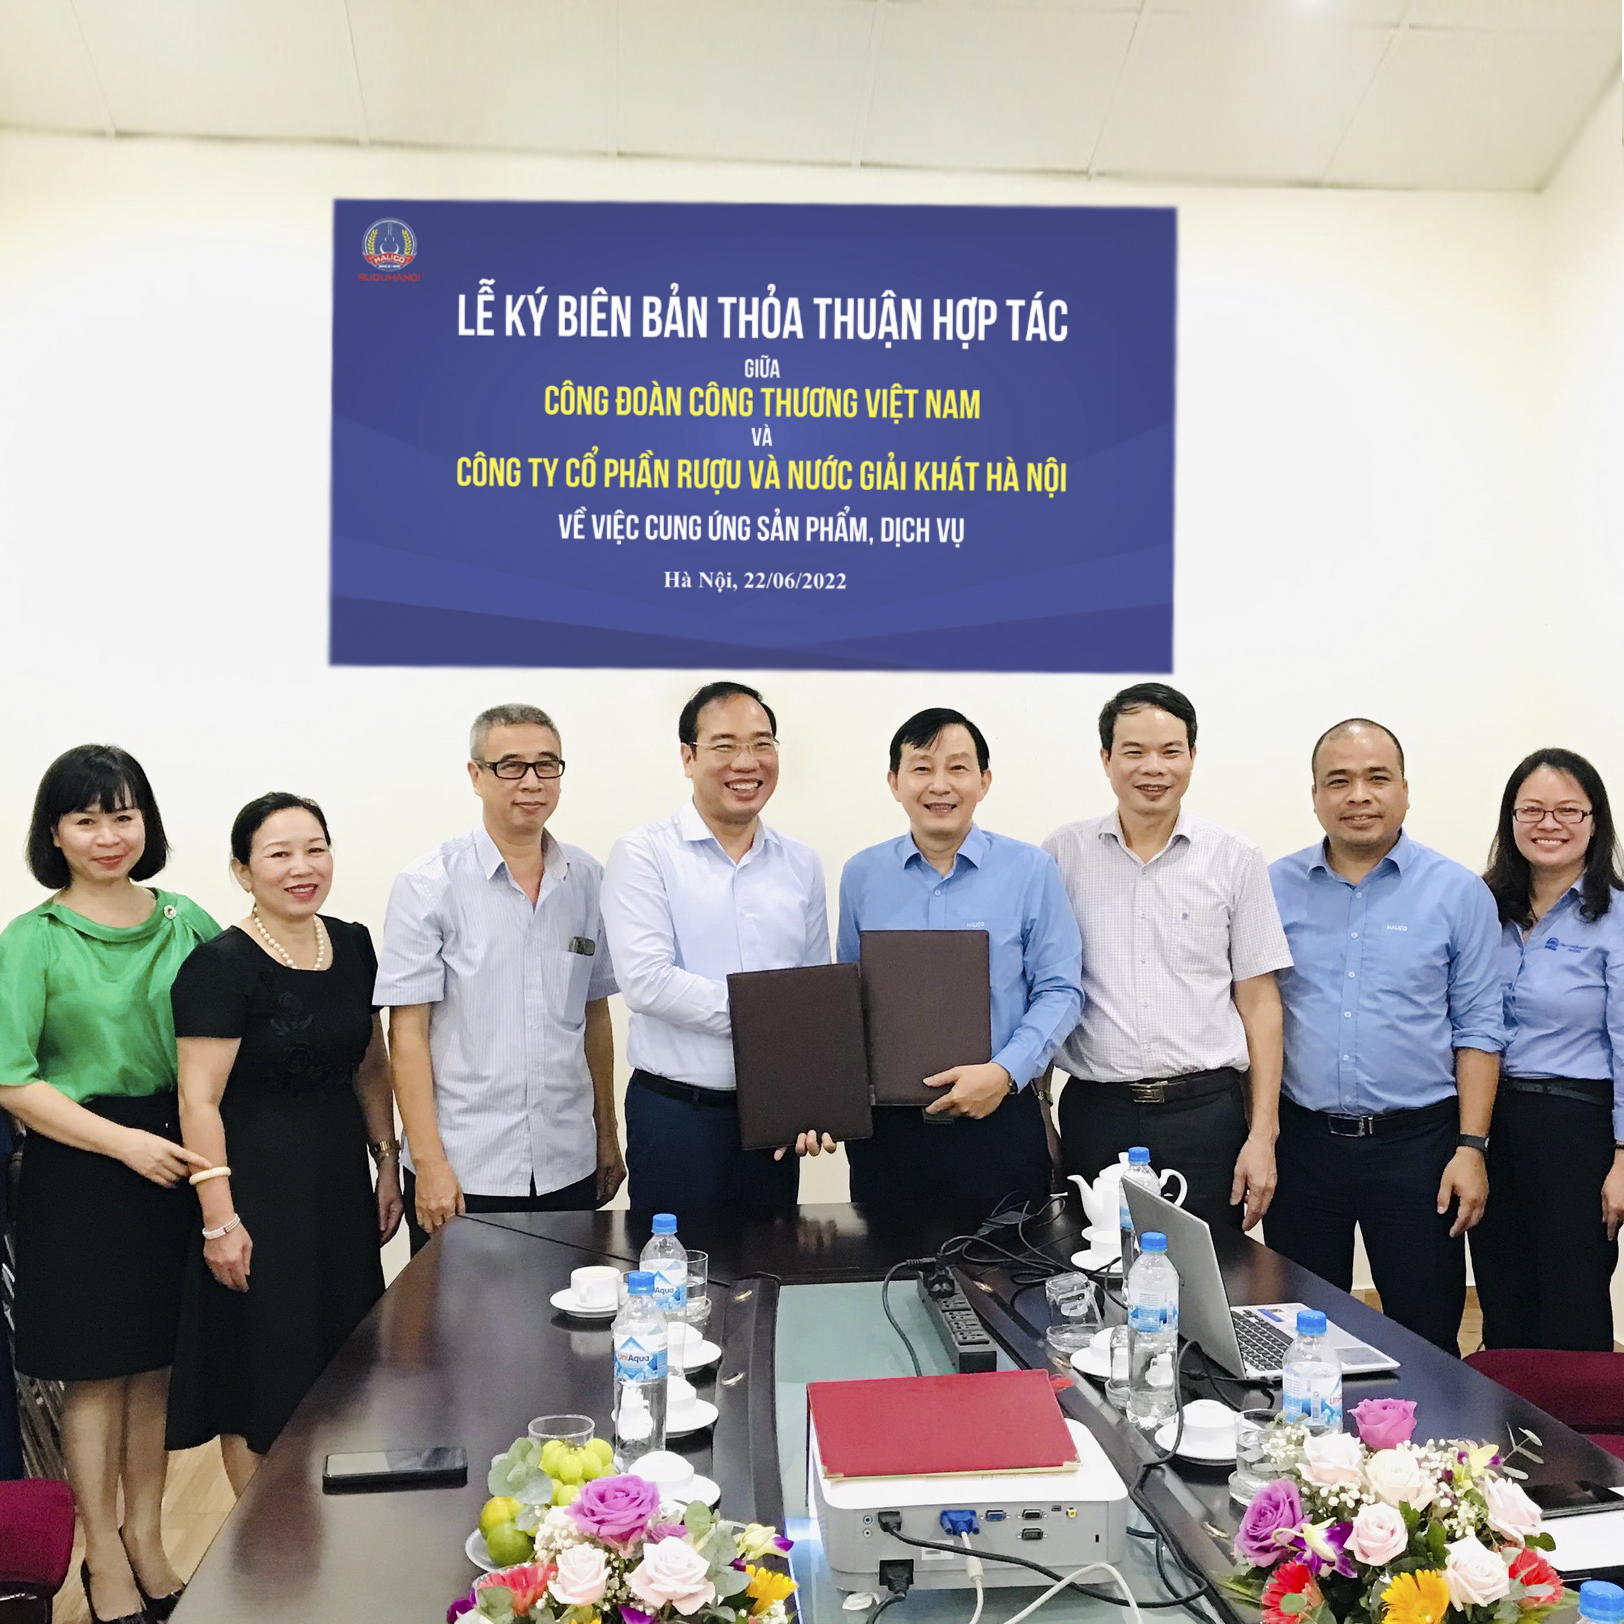 Halico tổ chức thành công Lễ ký biên bản thỏa thuận hợp tác với Công đoàn Công thương Việt Nam